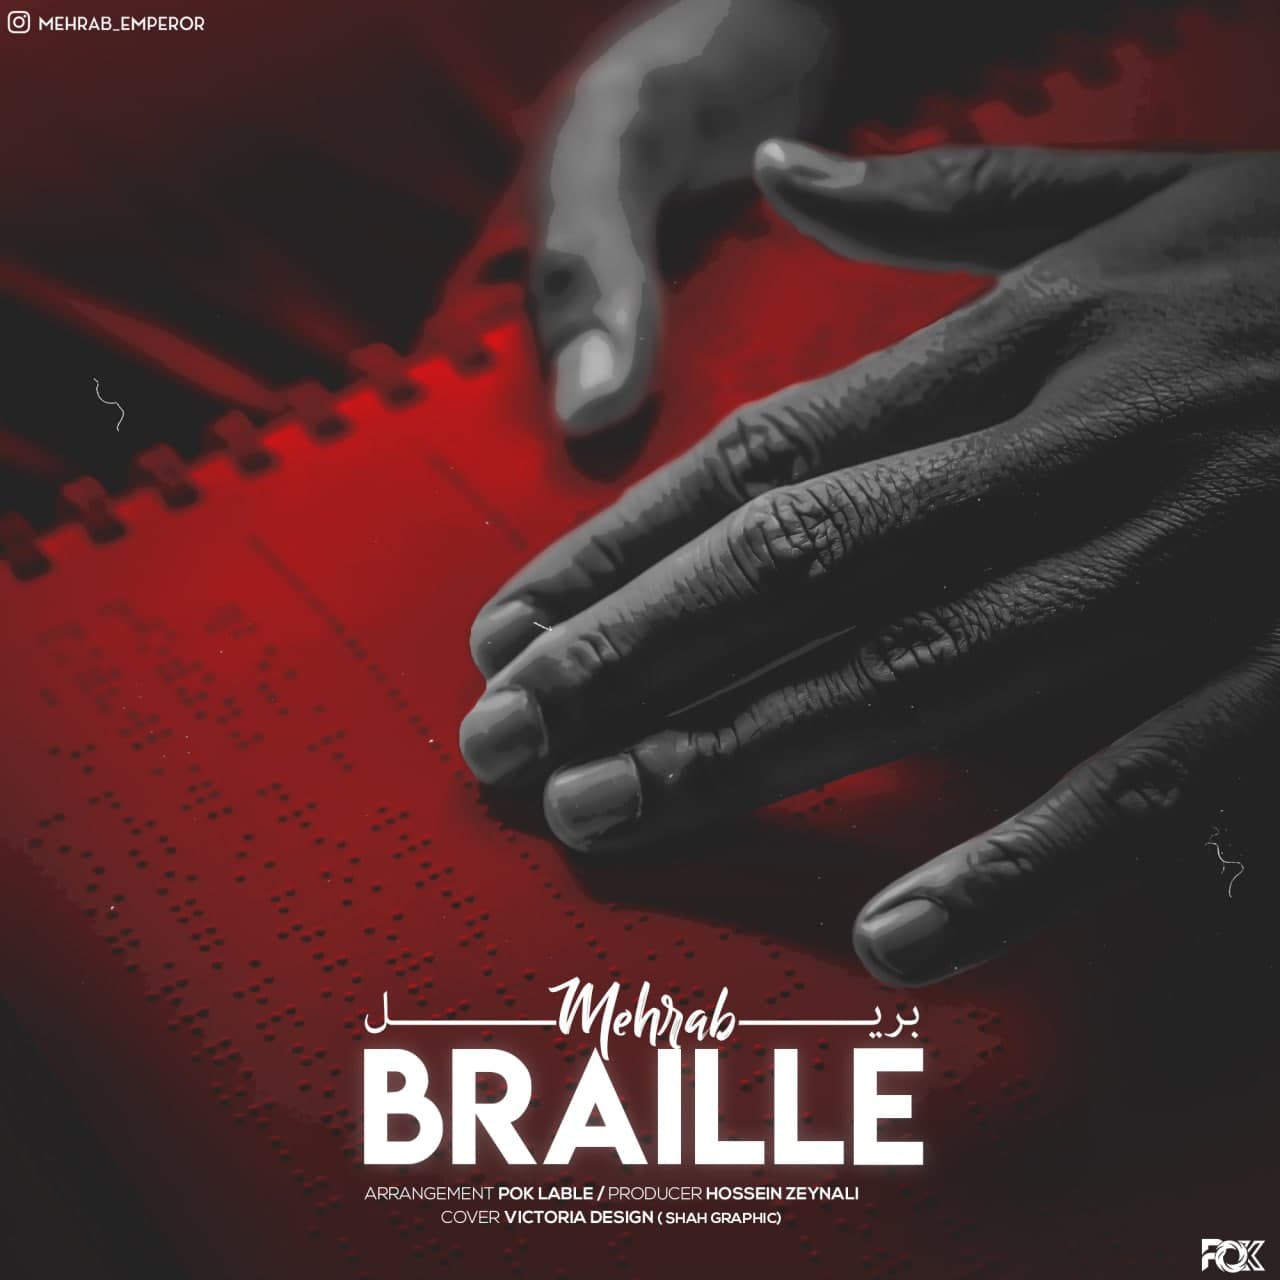  دانلود آهنگ جدید مهراب - بریل | Download New Music By Mehrab - Braille